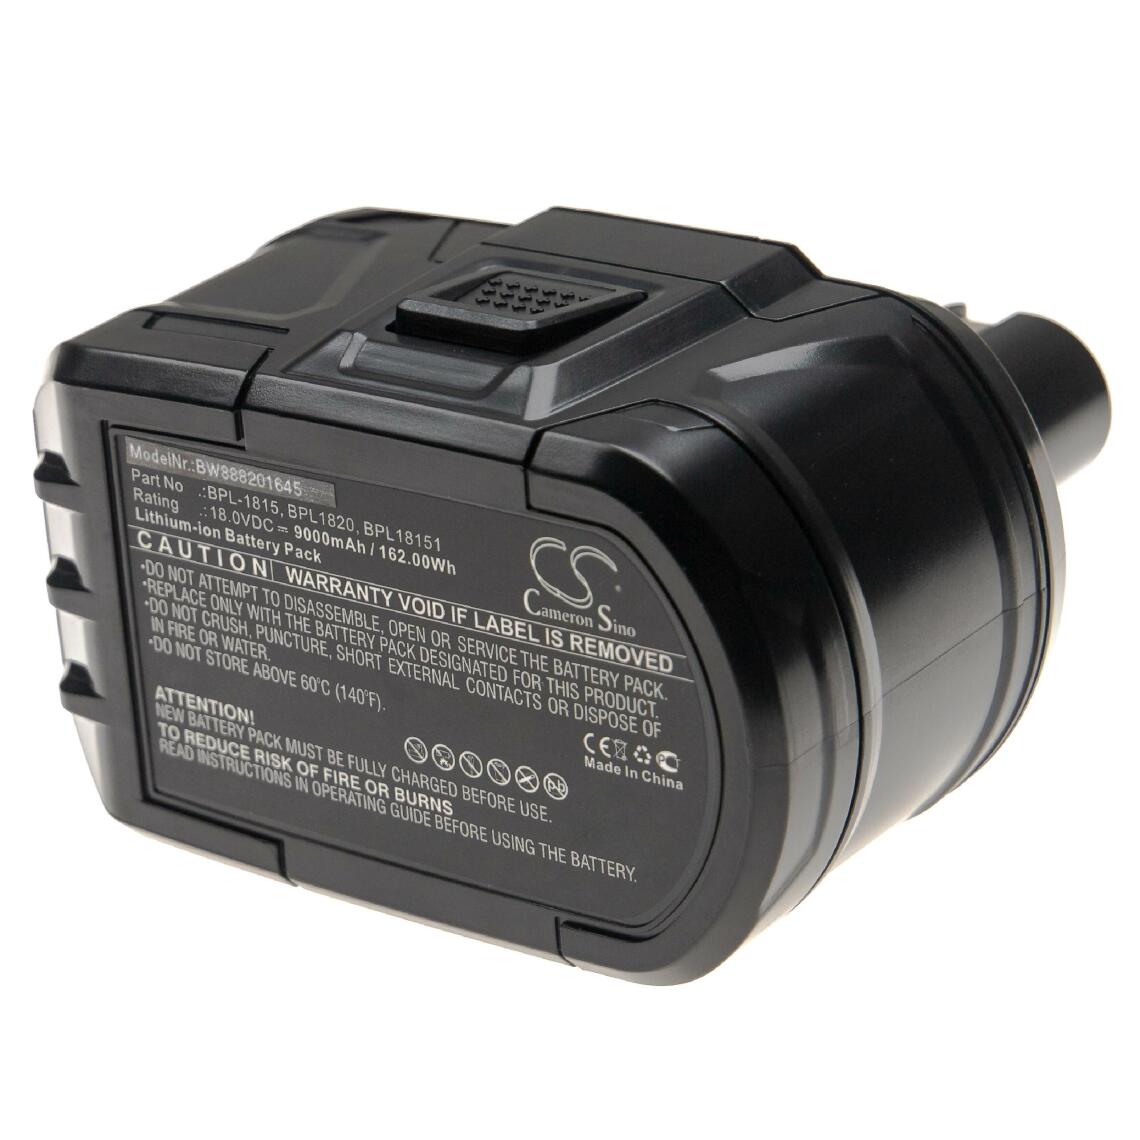 Vhbw - vhbw Batterie compatible avec Ryobi CCS-1801/DM, CCS-1801/LM, CCS-1801D, CCS-1801LM, CCW-180L, CDA-18021B outil électrique (9000mAh Li-Ion 18V) - Clouterie